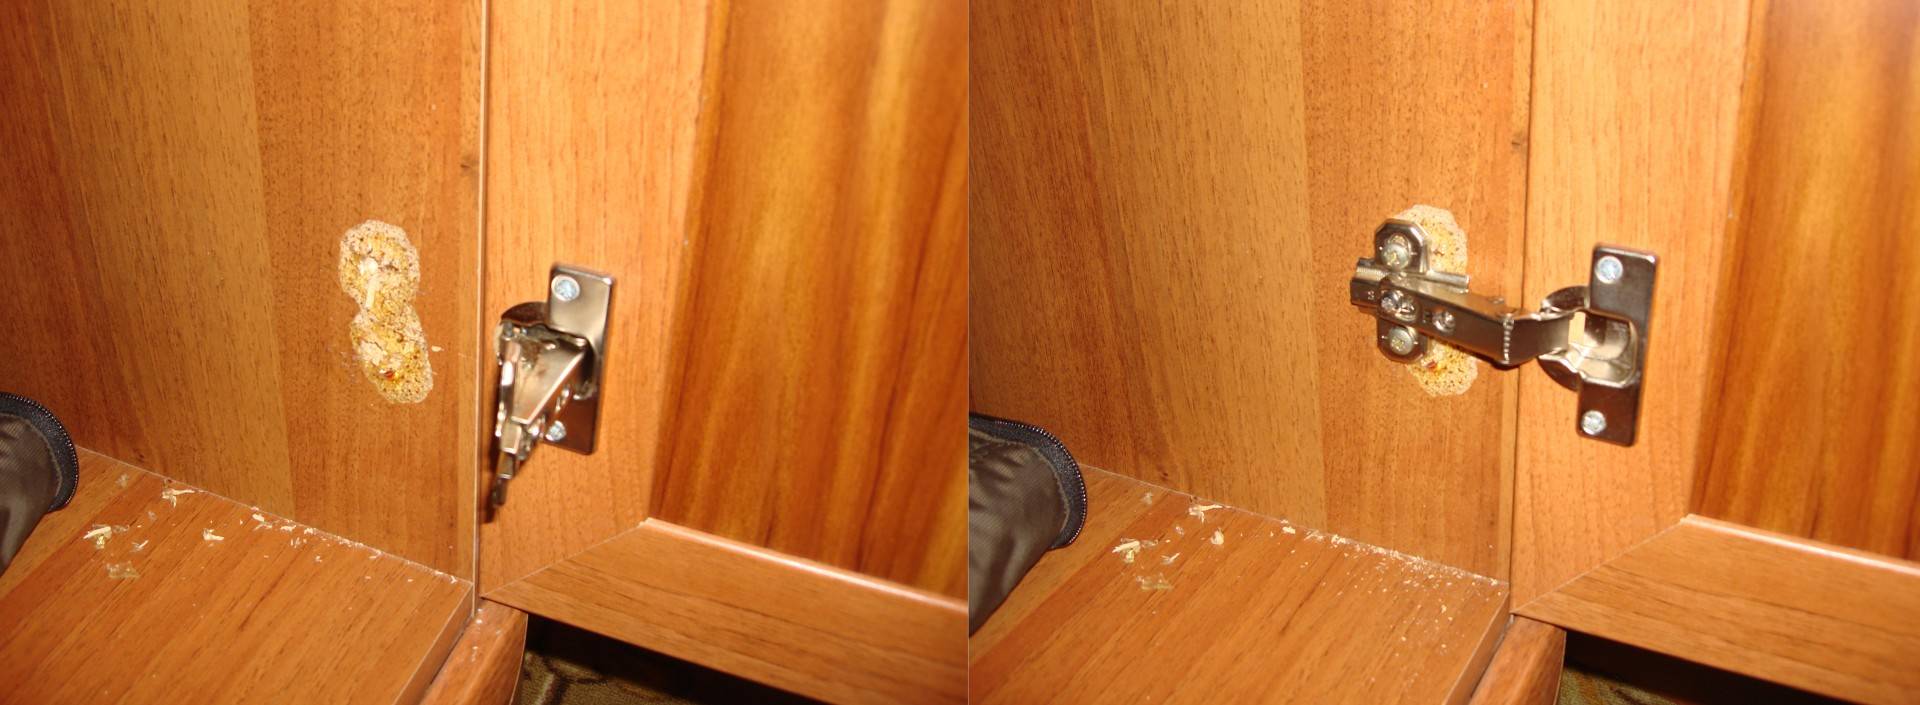 Как отремонтировать вырванную петлю из дсп. как отремонтировать дверь шкафа если вырваны петли